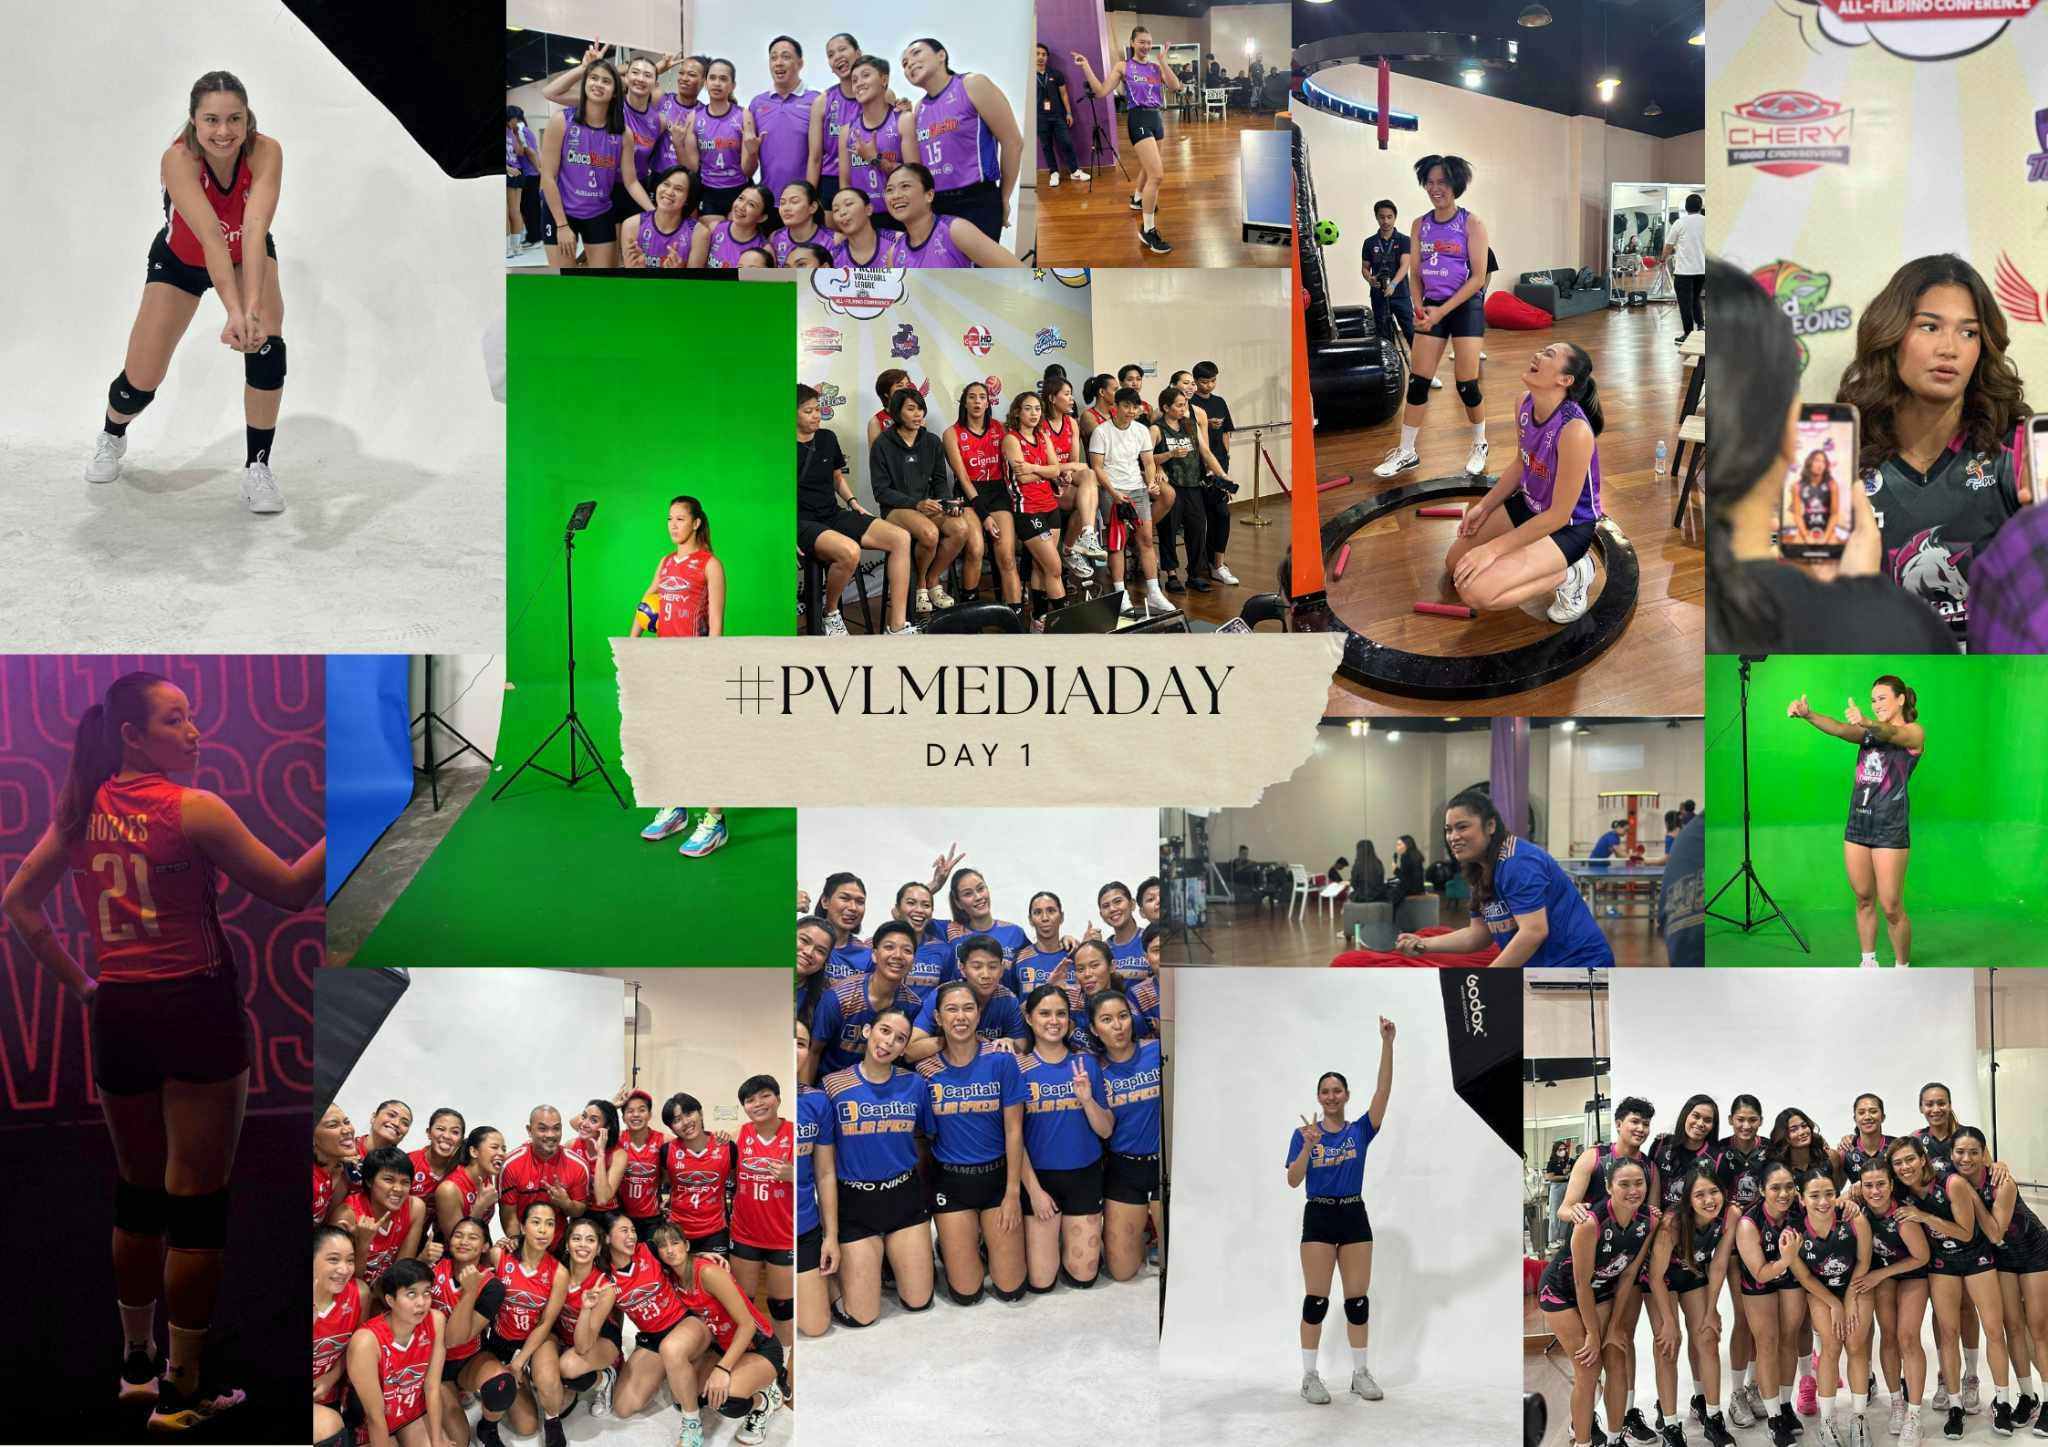 PVL: #PVLMediaDay Day 1 in a nutshell